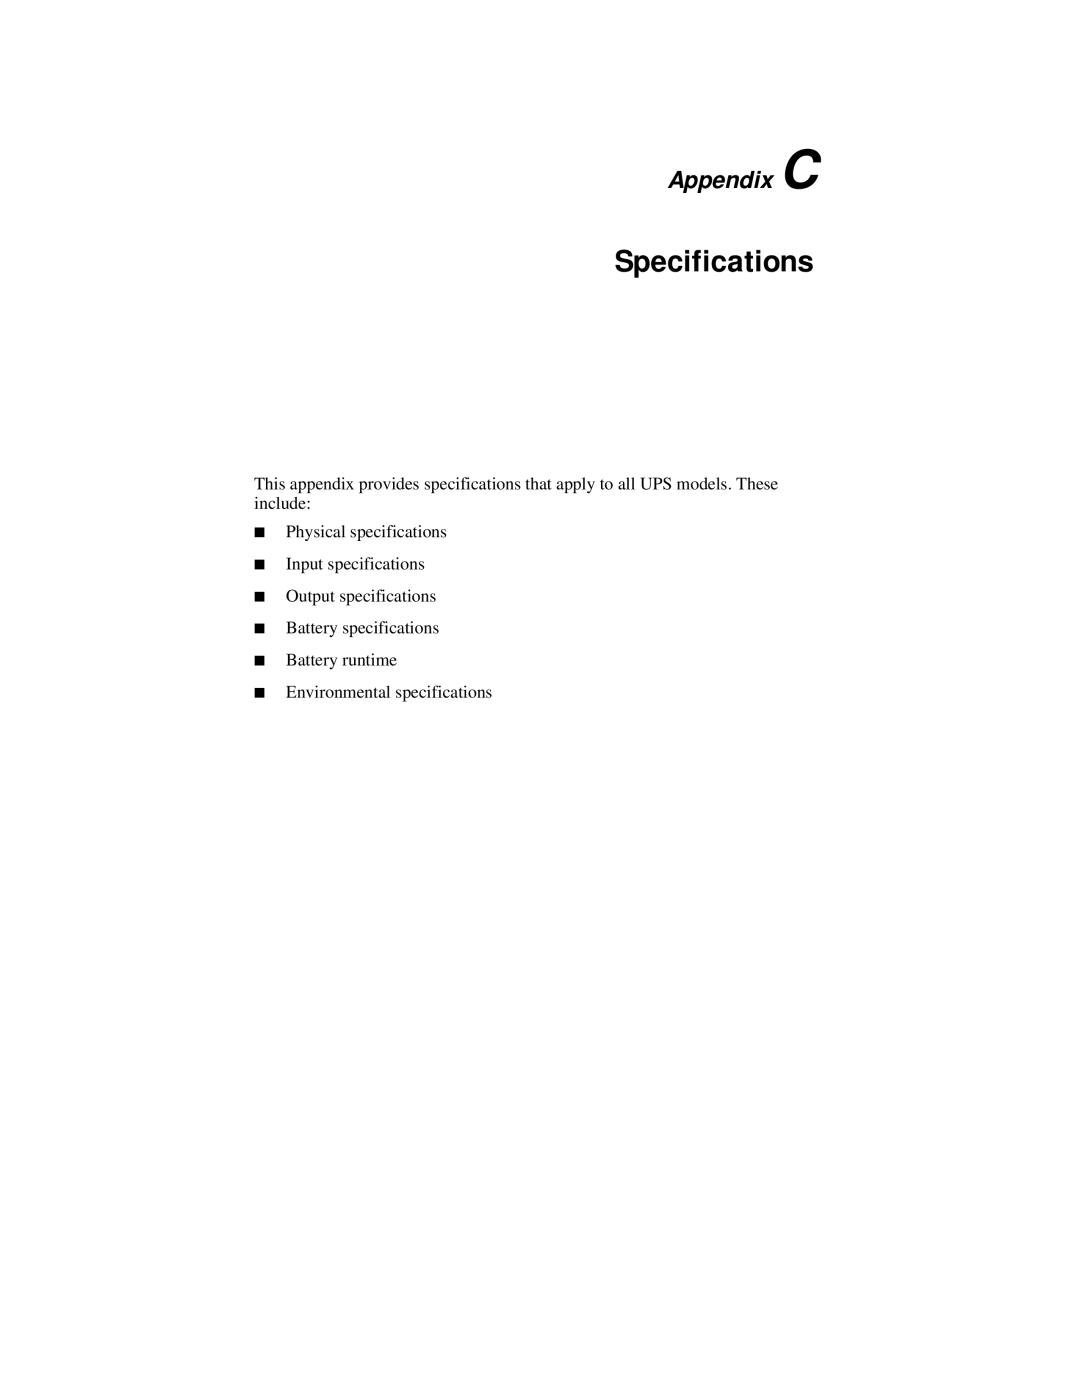 Compaq R6000 Series manual Specifications, Appendix C 